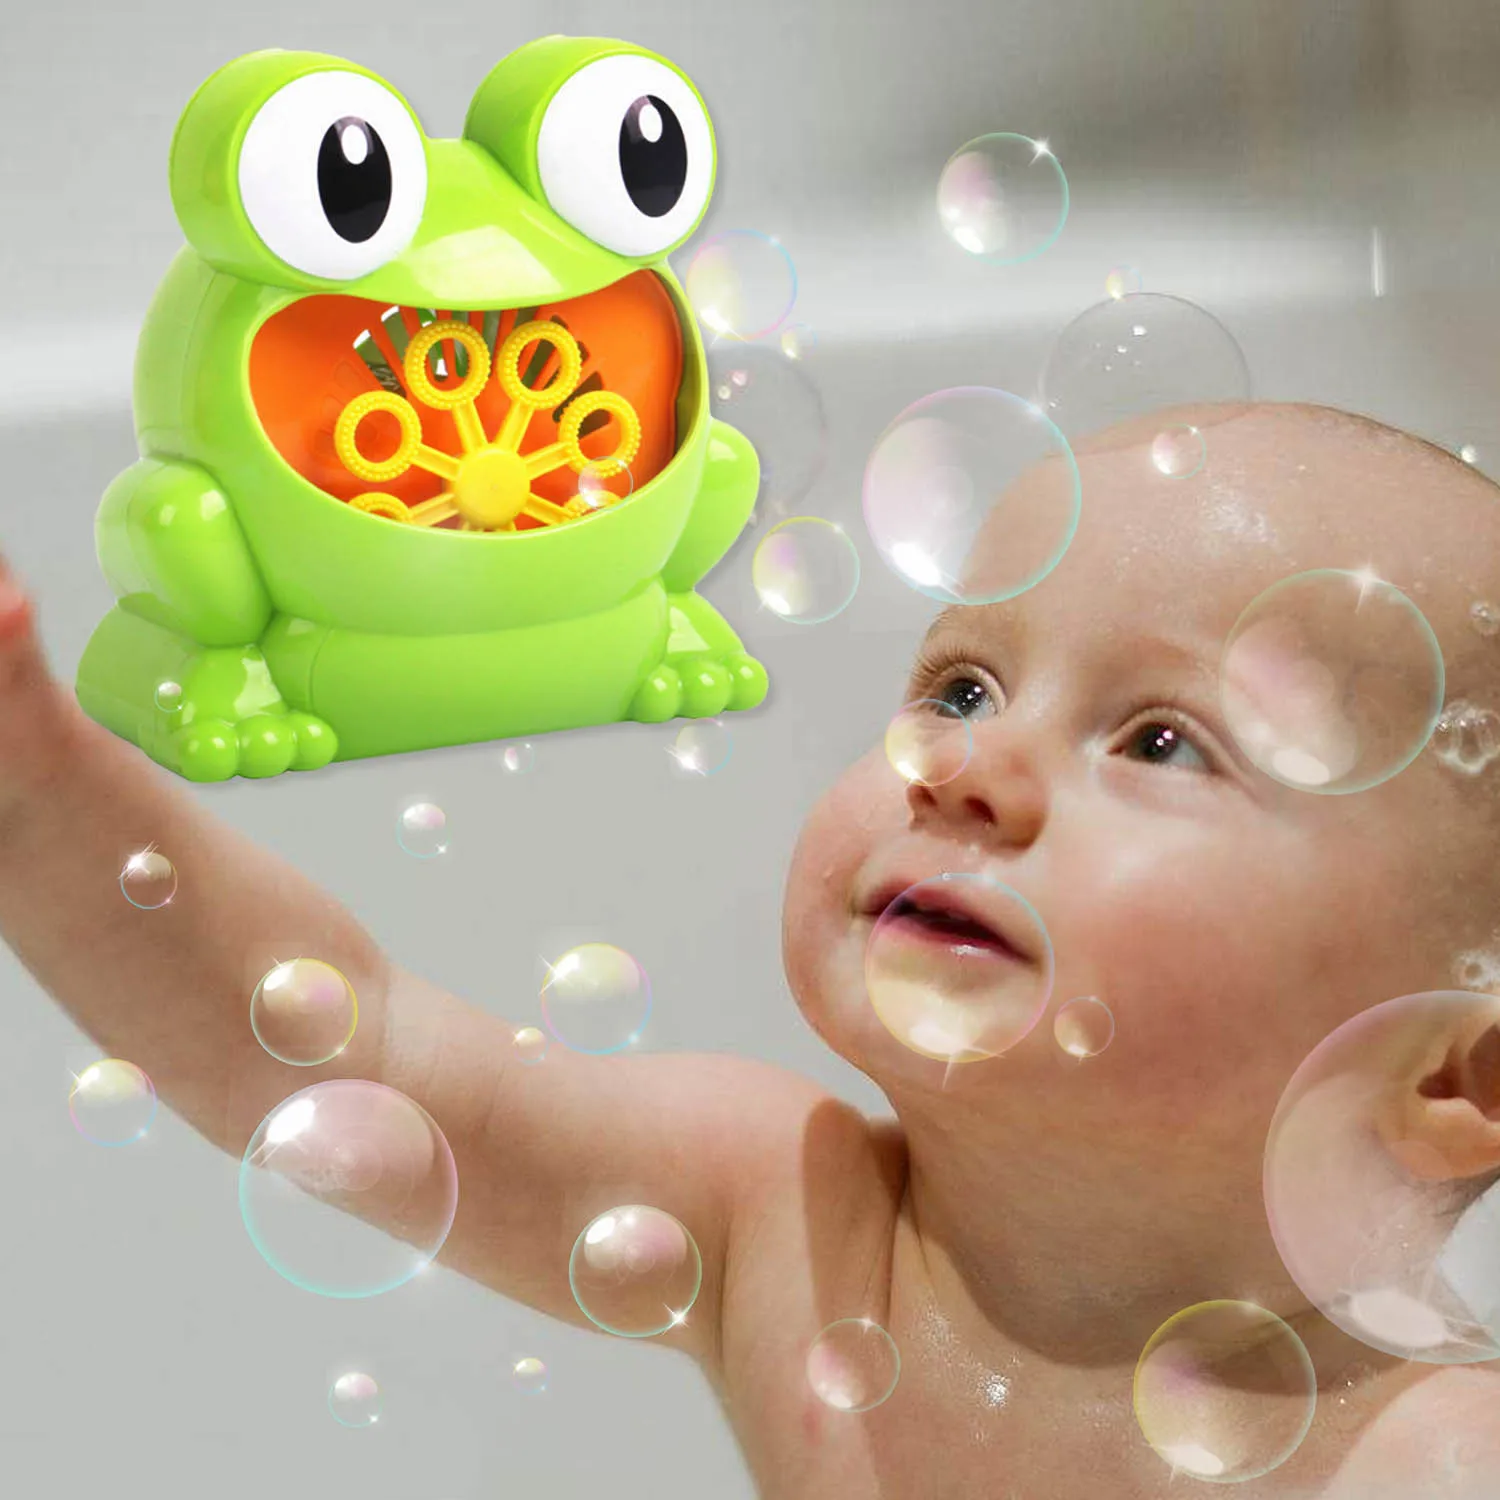 Besegad Милая забавная лягушка в форме музыкального пузыря машина игрушка воздуходувка для детей детский душ плавательный бассейн Ванна мыло машина